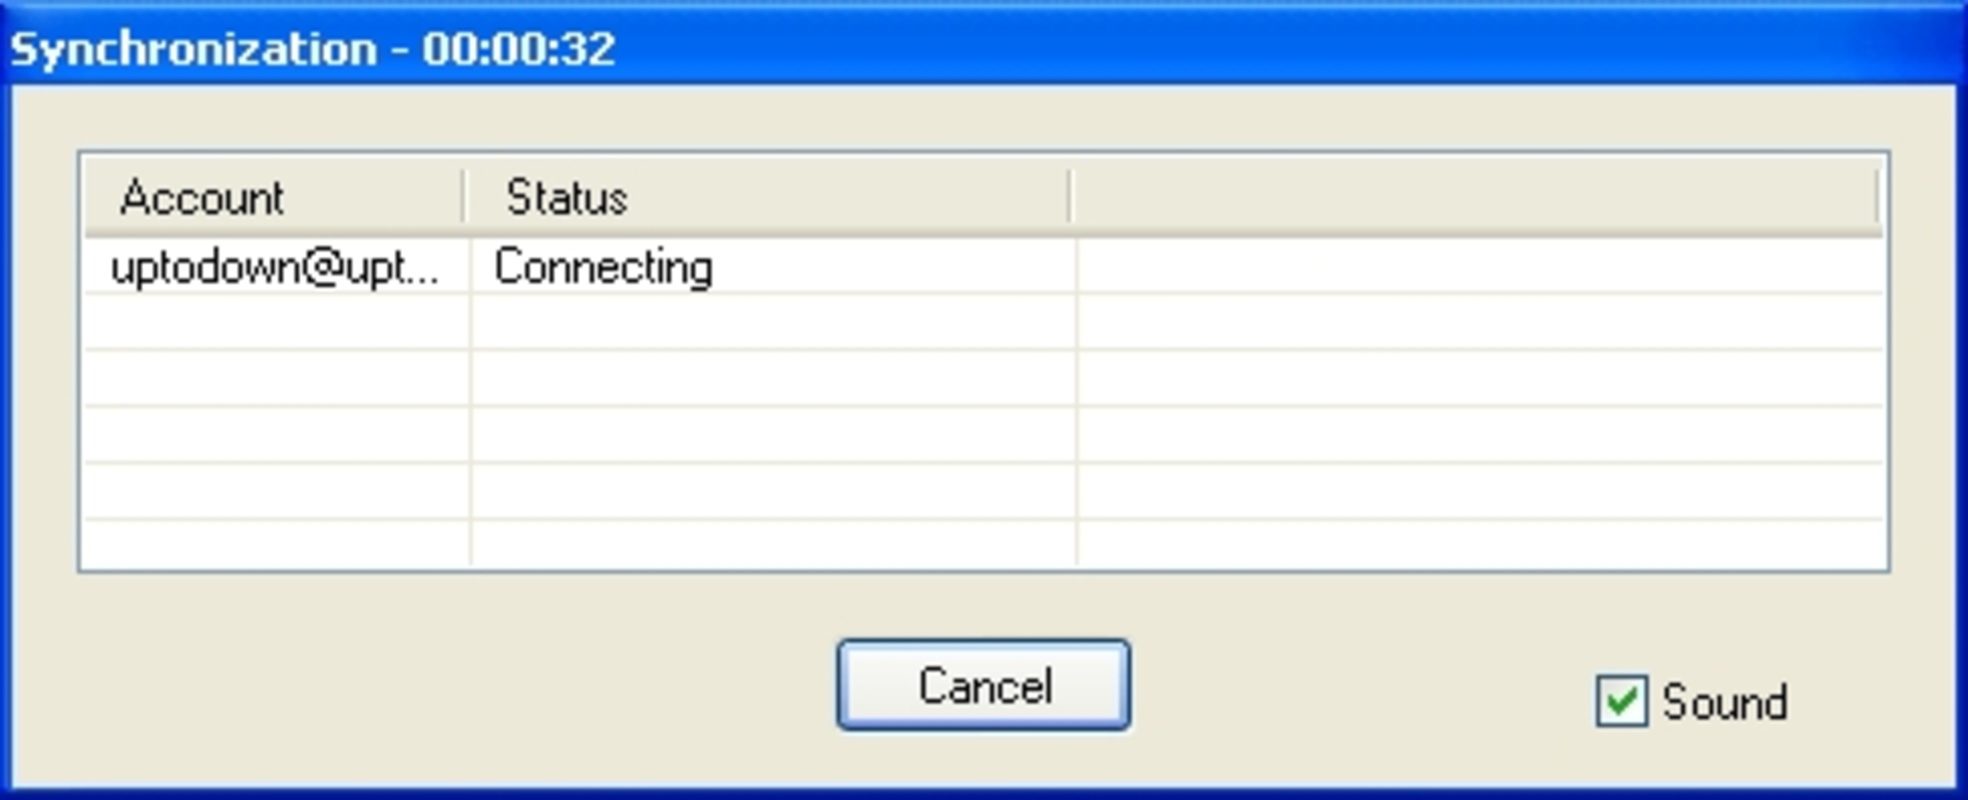 Free Antispam Scanner 1.1 for Windows Screenshot 1